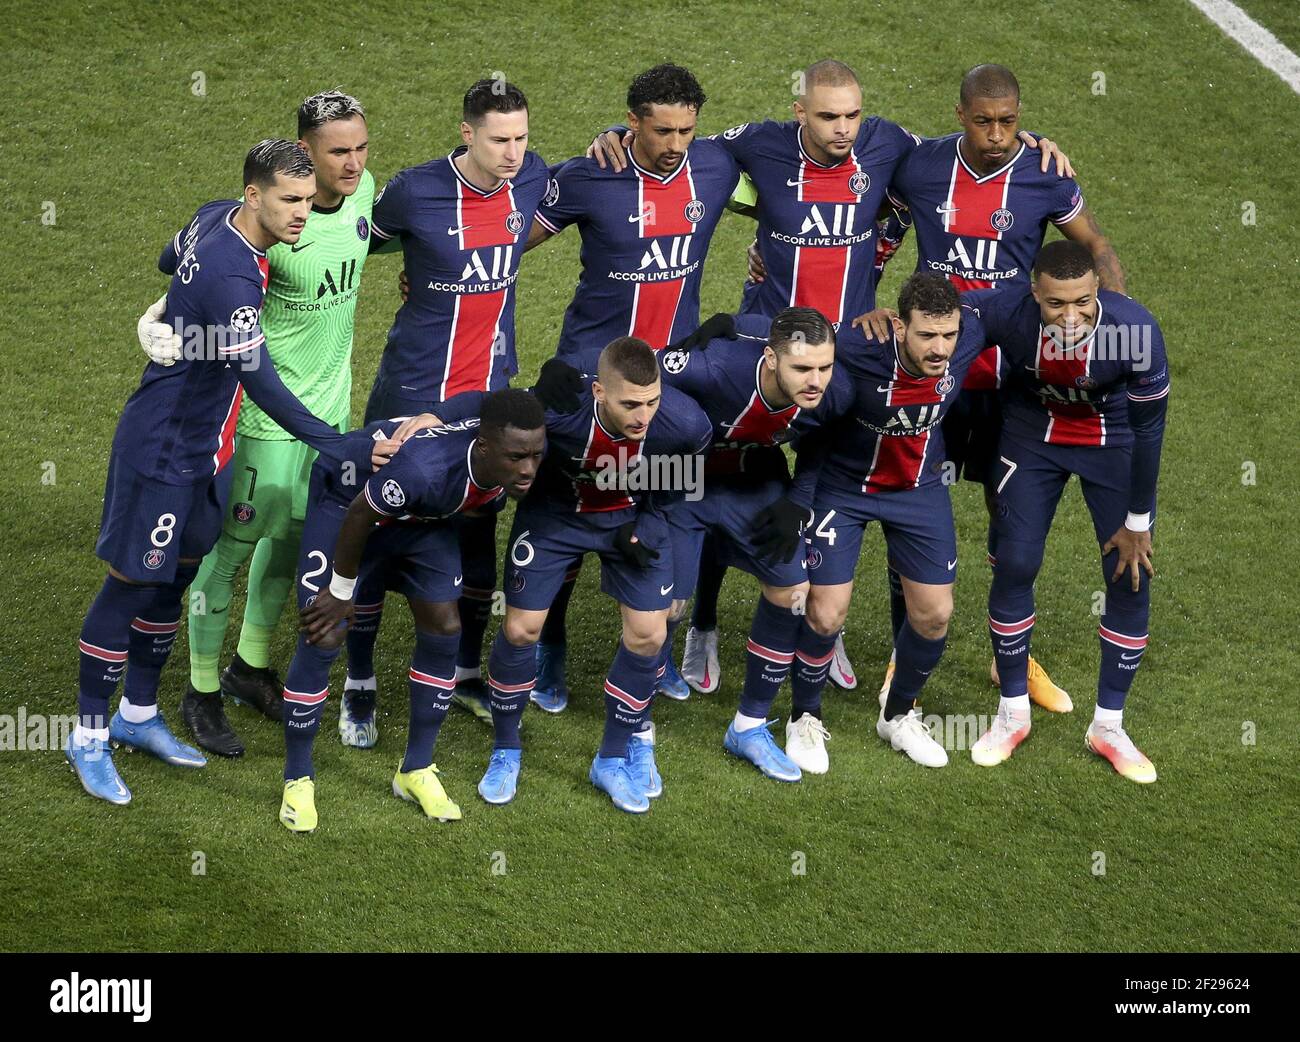 L'équipe PSG pose devant la Ligue des champions de l'UEFA, ronde 16, 2ème  match de football entre Paris Saint-Germain (PSG) et le FC Barcelone  (Barca) le 10 mars 2021 au stade du